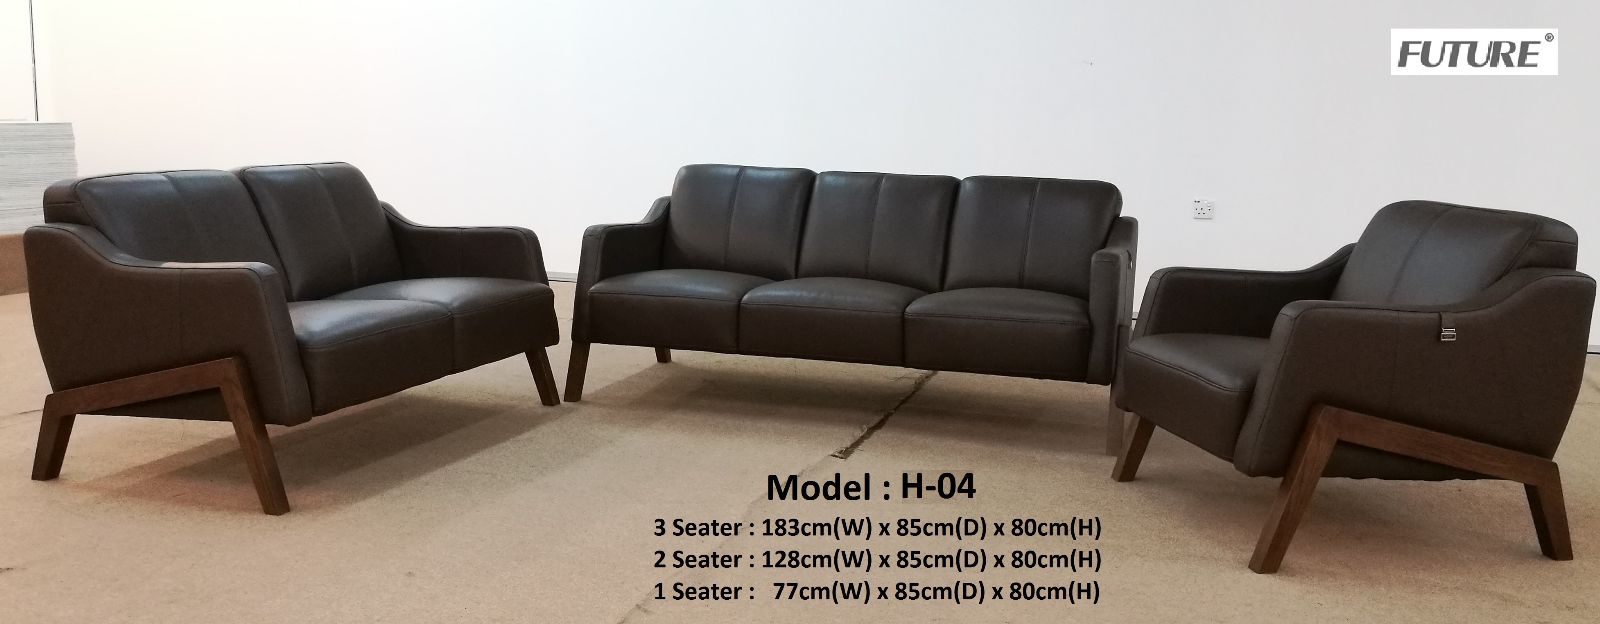 Sofa băng da Future Model H-04 siêu khuyến mại 40% saigonsofa.com